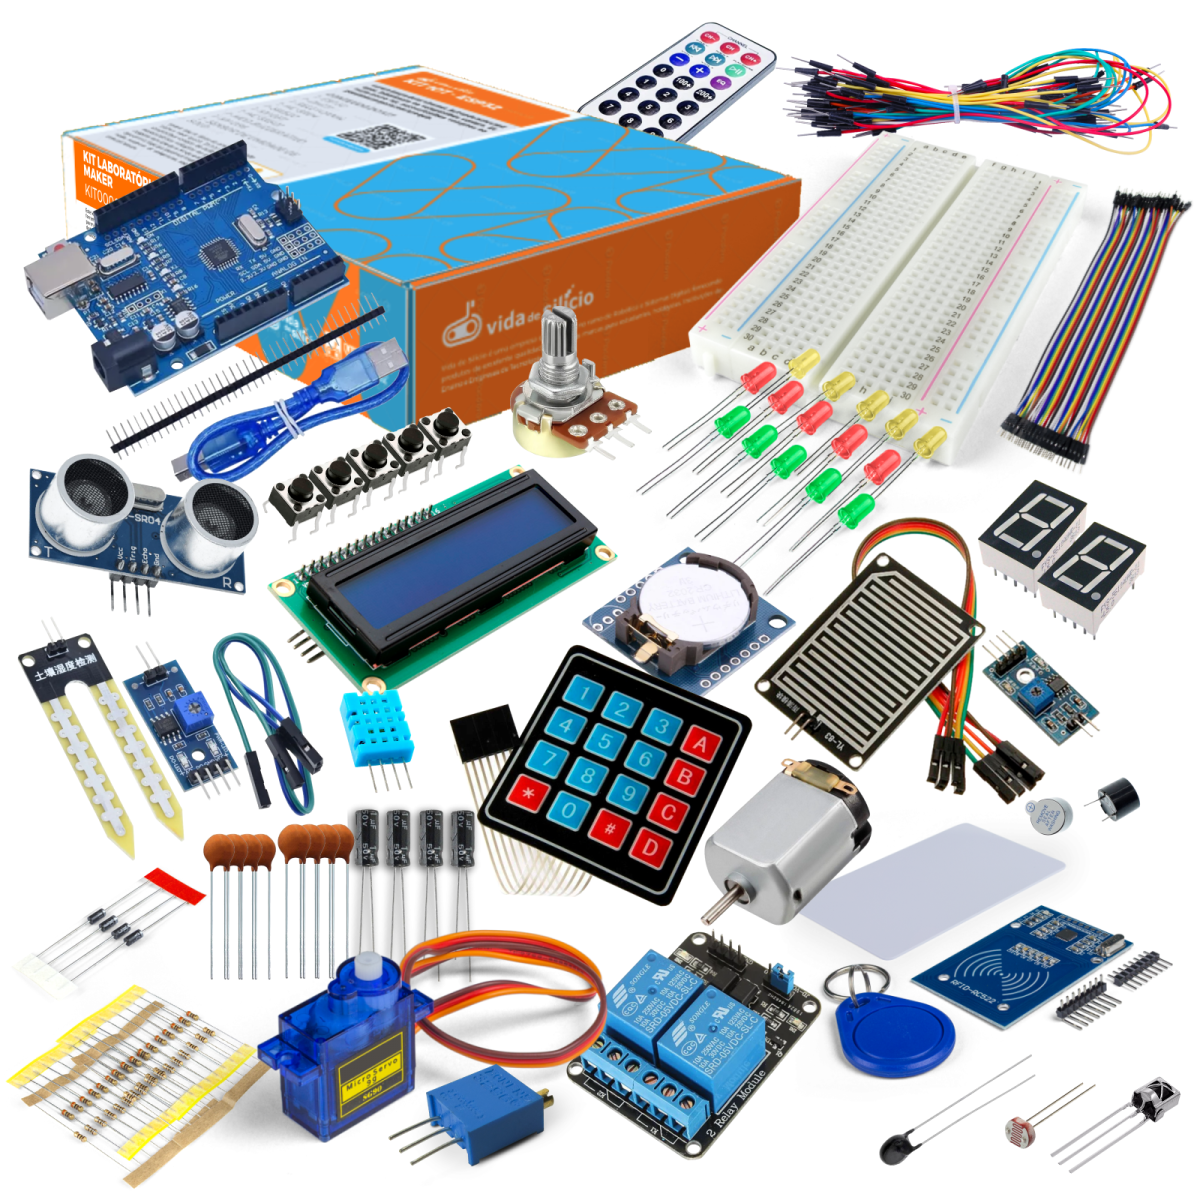 Kit Maker Com Arduino ccom diversos módulos e acessórios para prototipação